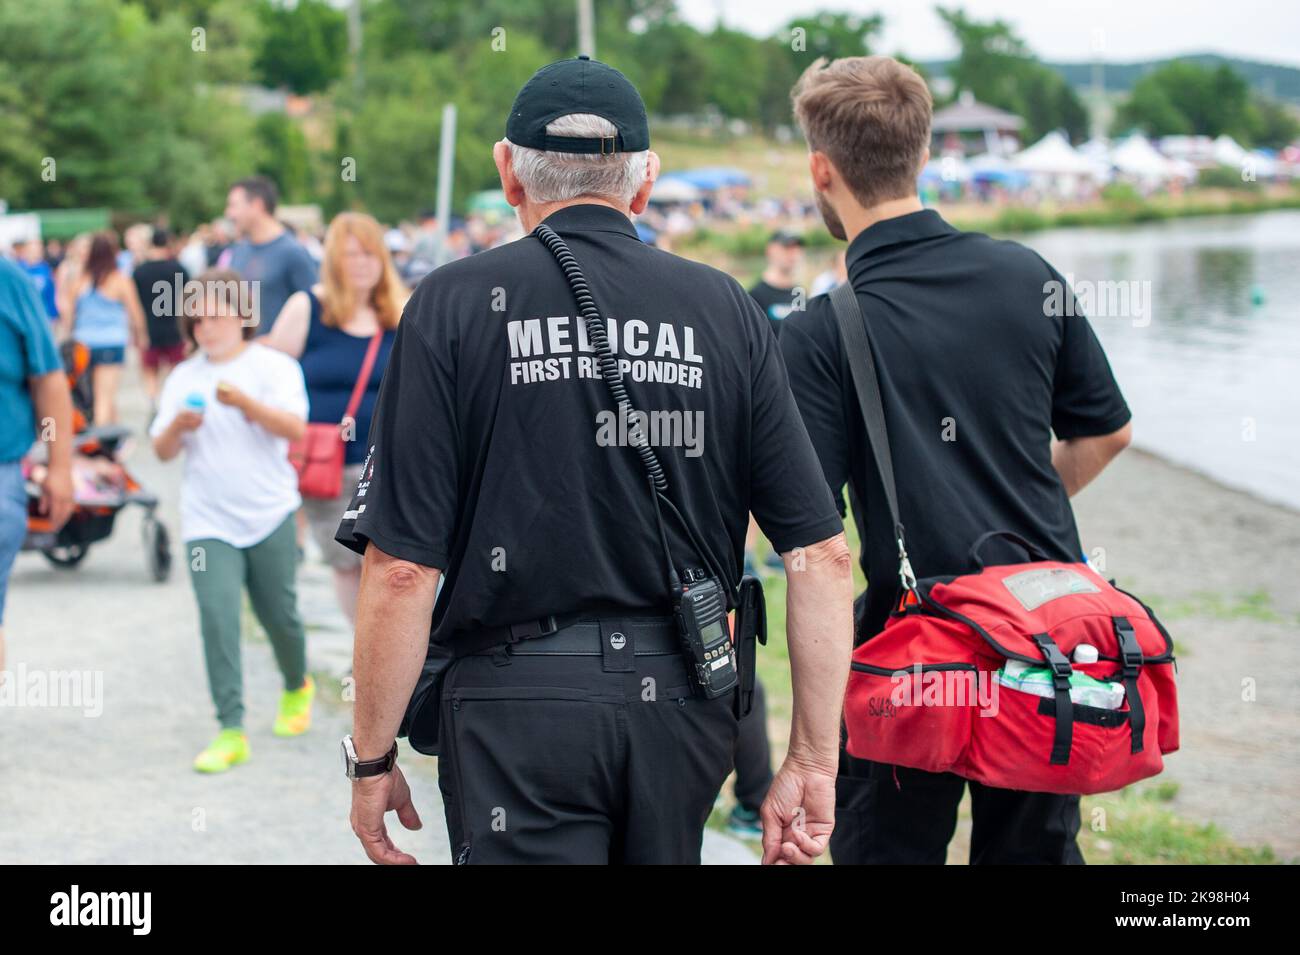 Medizinische Ersthelfer gehen in schwarzen Uniformen auf einer Straße entlang, wobei der medizinische Ersthelfer in grauen Buchstaben auf der Rückseite des Sanitäters steht. Stockfoto